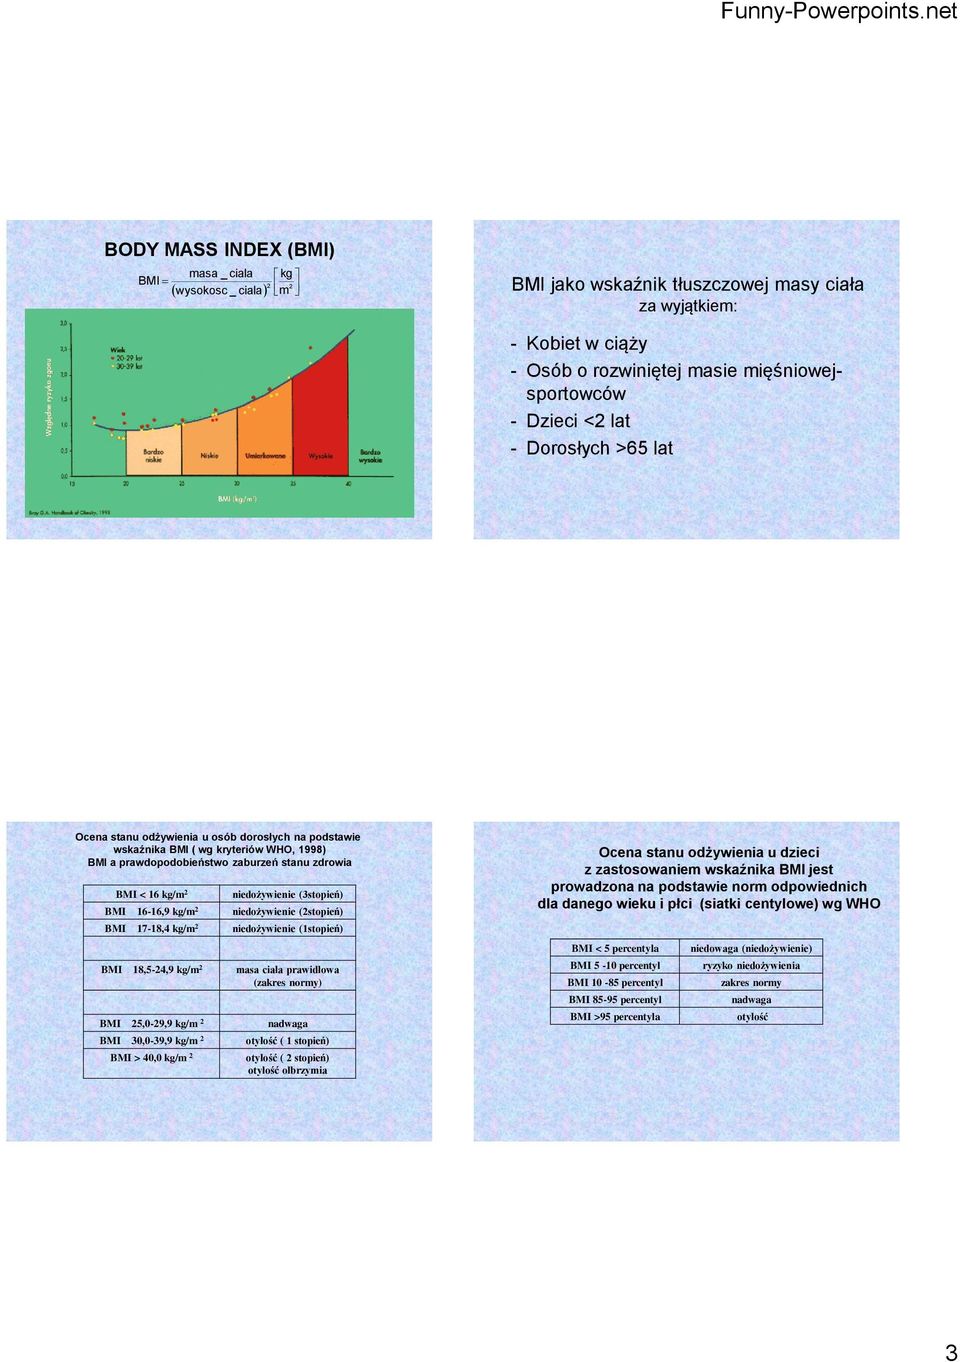 BMI 16-16,9 kg/m niedożywienie (stopień) BMI 17-18,4 kg/m niedożywienie (1stopień) BMI 18,5-4,9 kg/m masa ciała prawidłowa (zakres normy) BMI 5,0-9,9 kg/m nadwaga BMI 30,0-39,9 kg/m otyłość ( 1